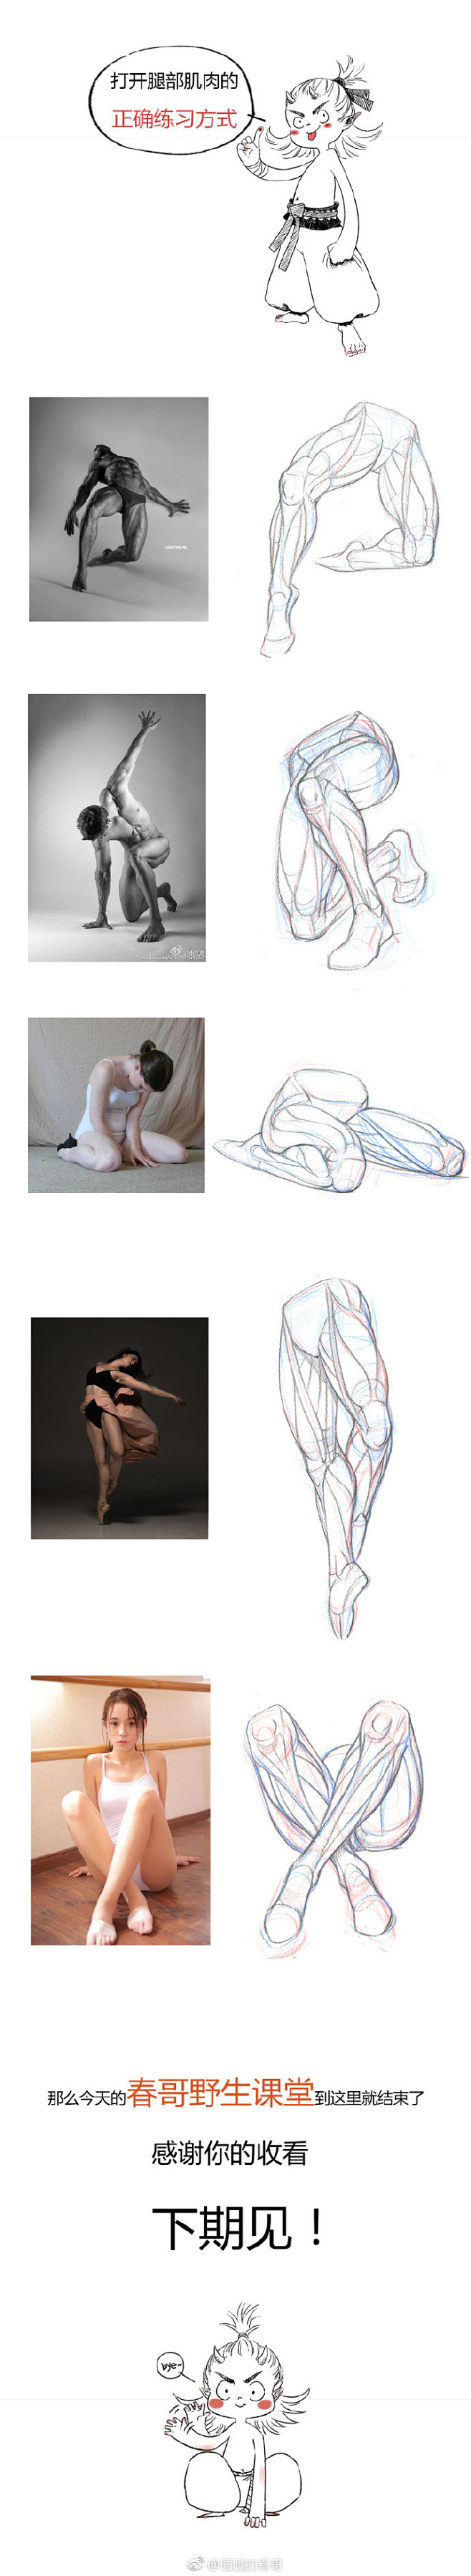 #春哥的绘画课室# 条漫第五弹：腿部结构...